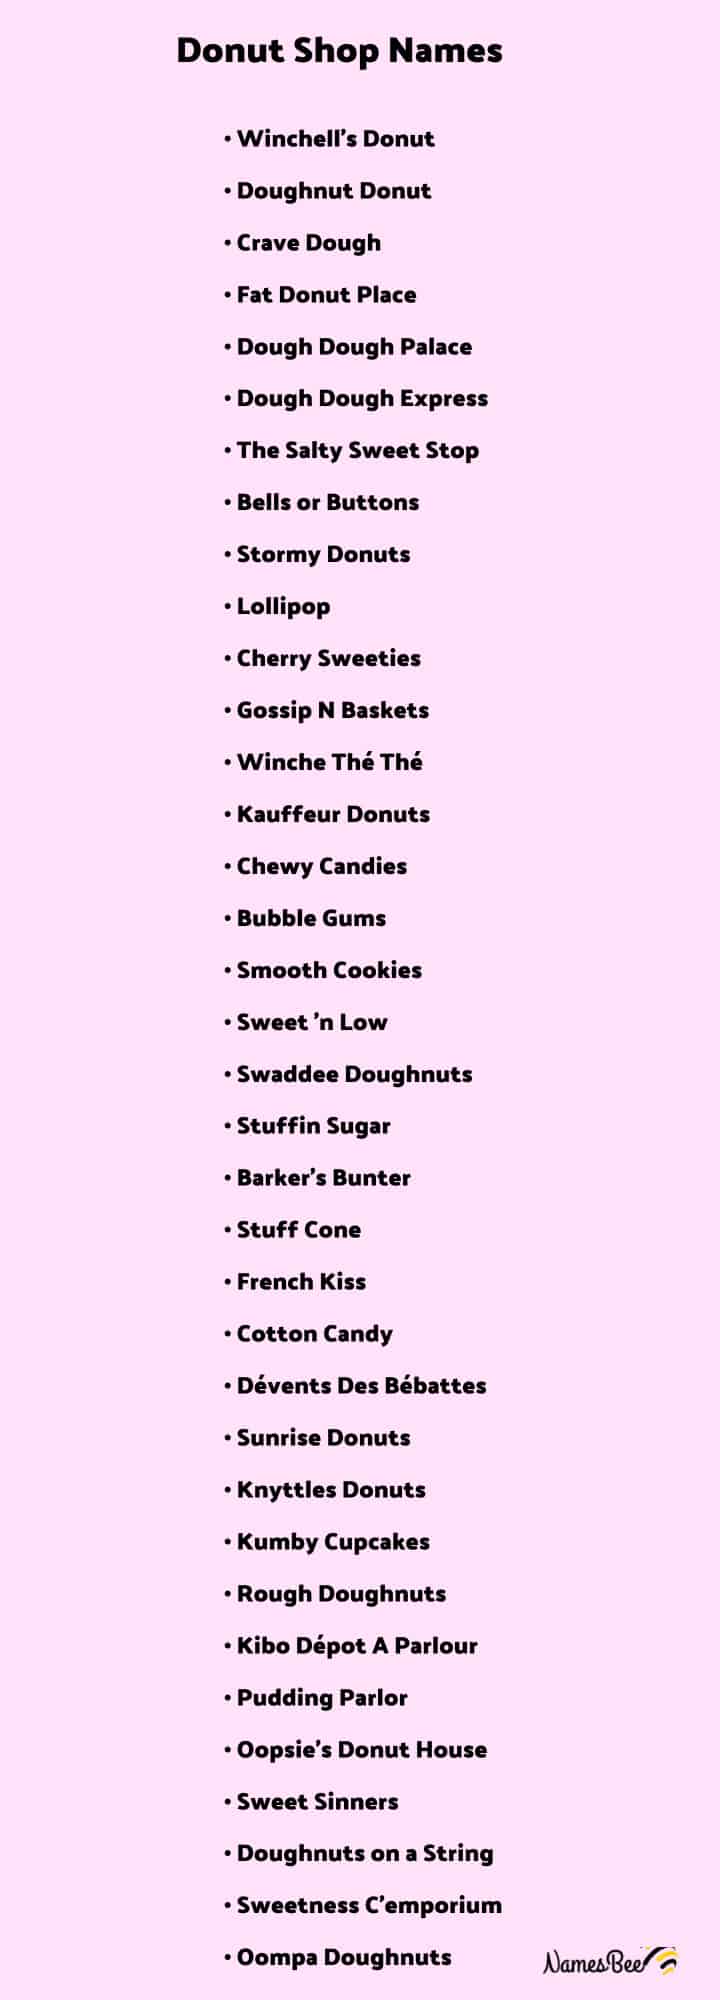 donut brand names list